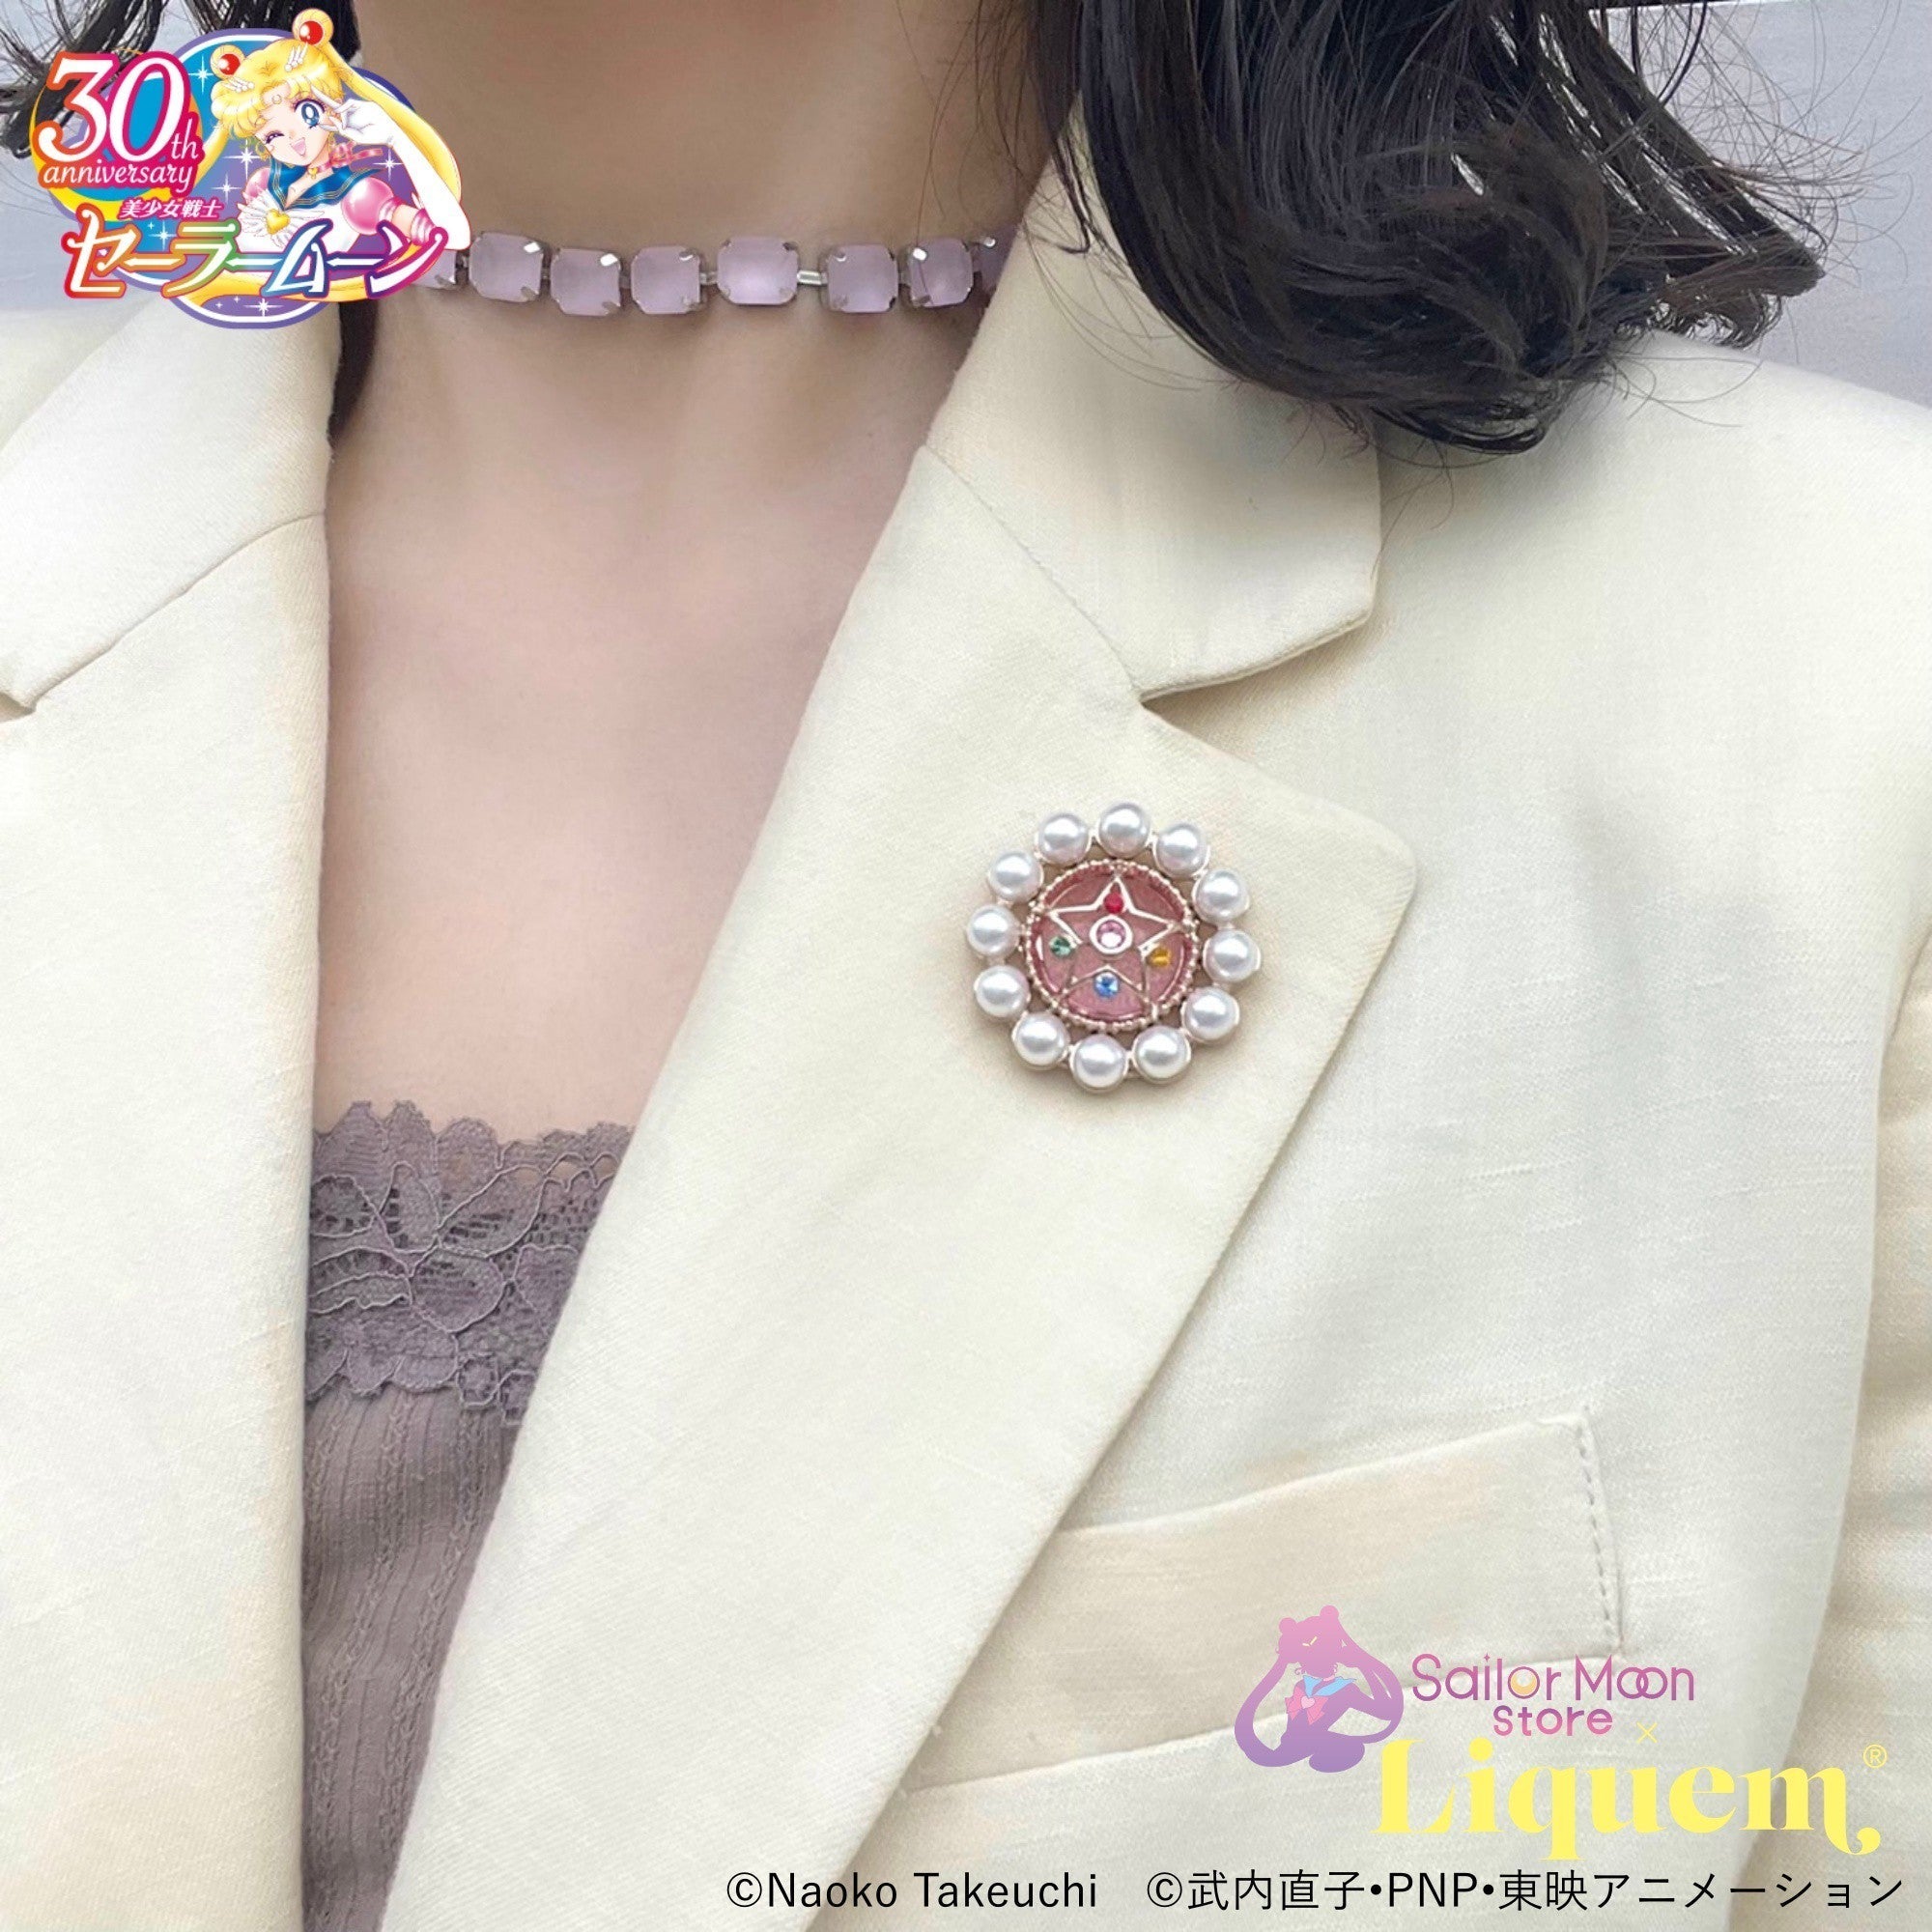 Sailor Moon store x Liquem / クリスタルスターコンパクトピンズ